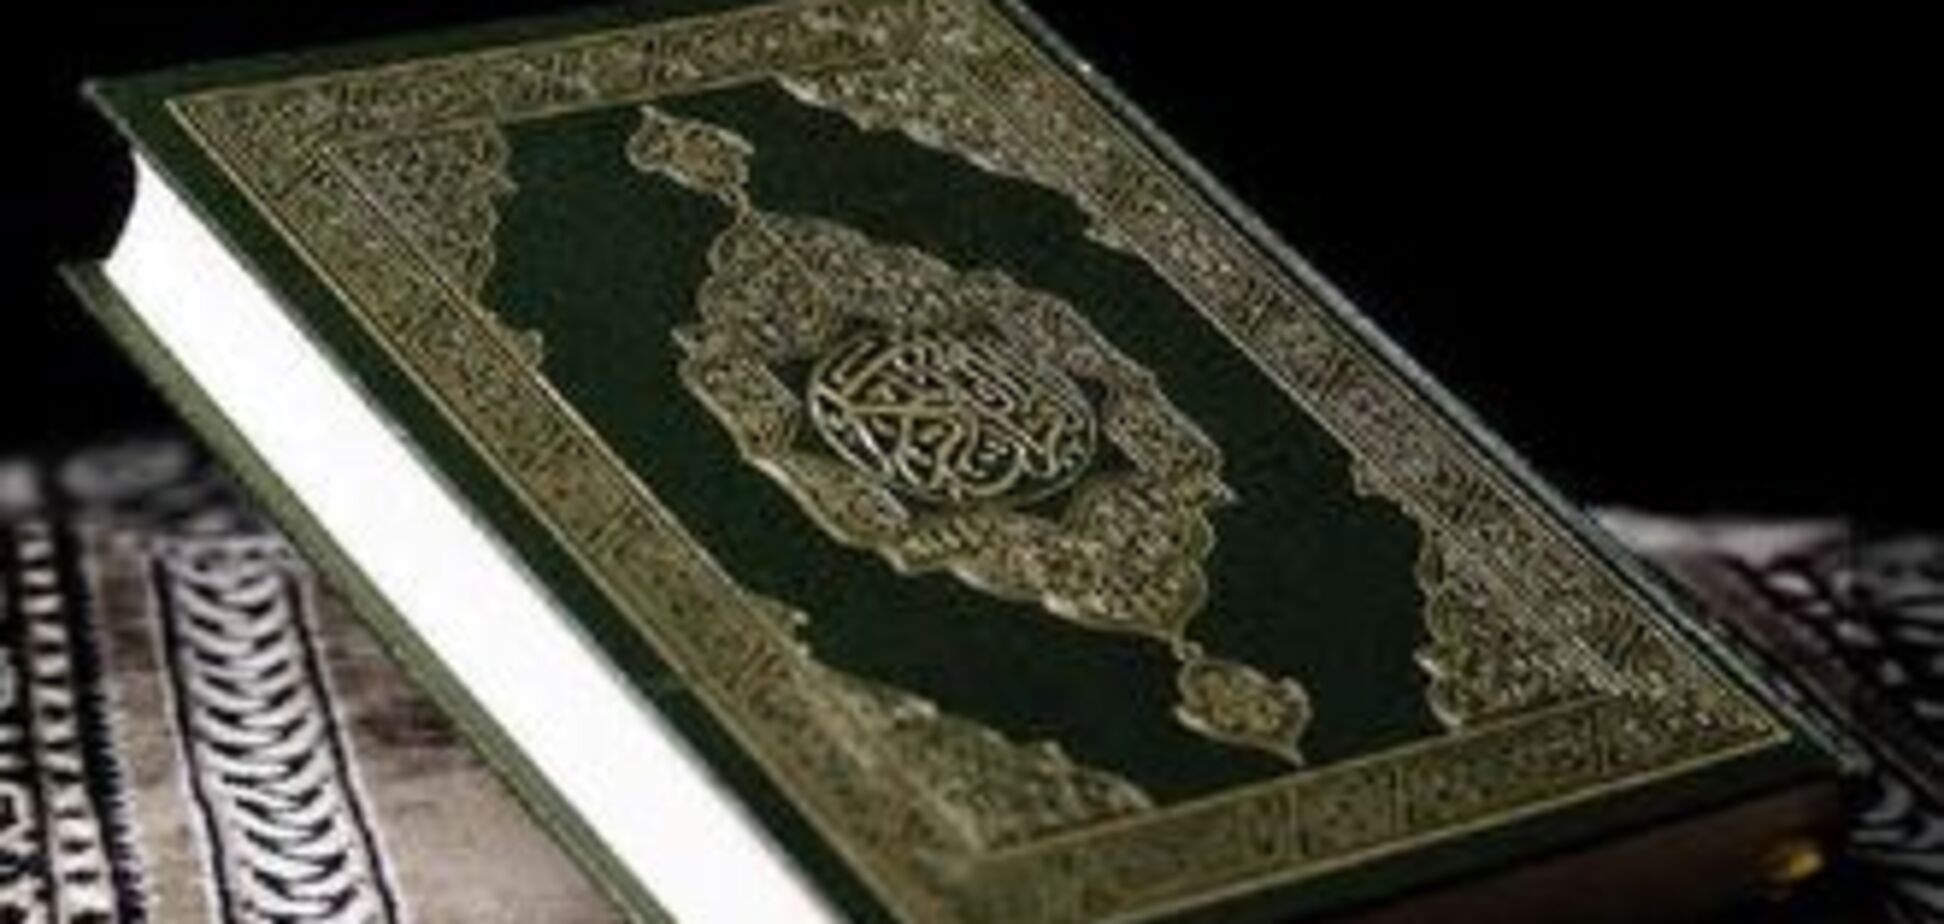 За спалення Корану в Англії заарештовано шість осіб